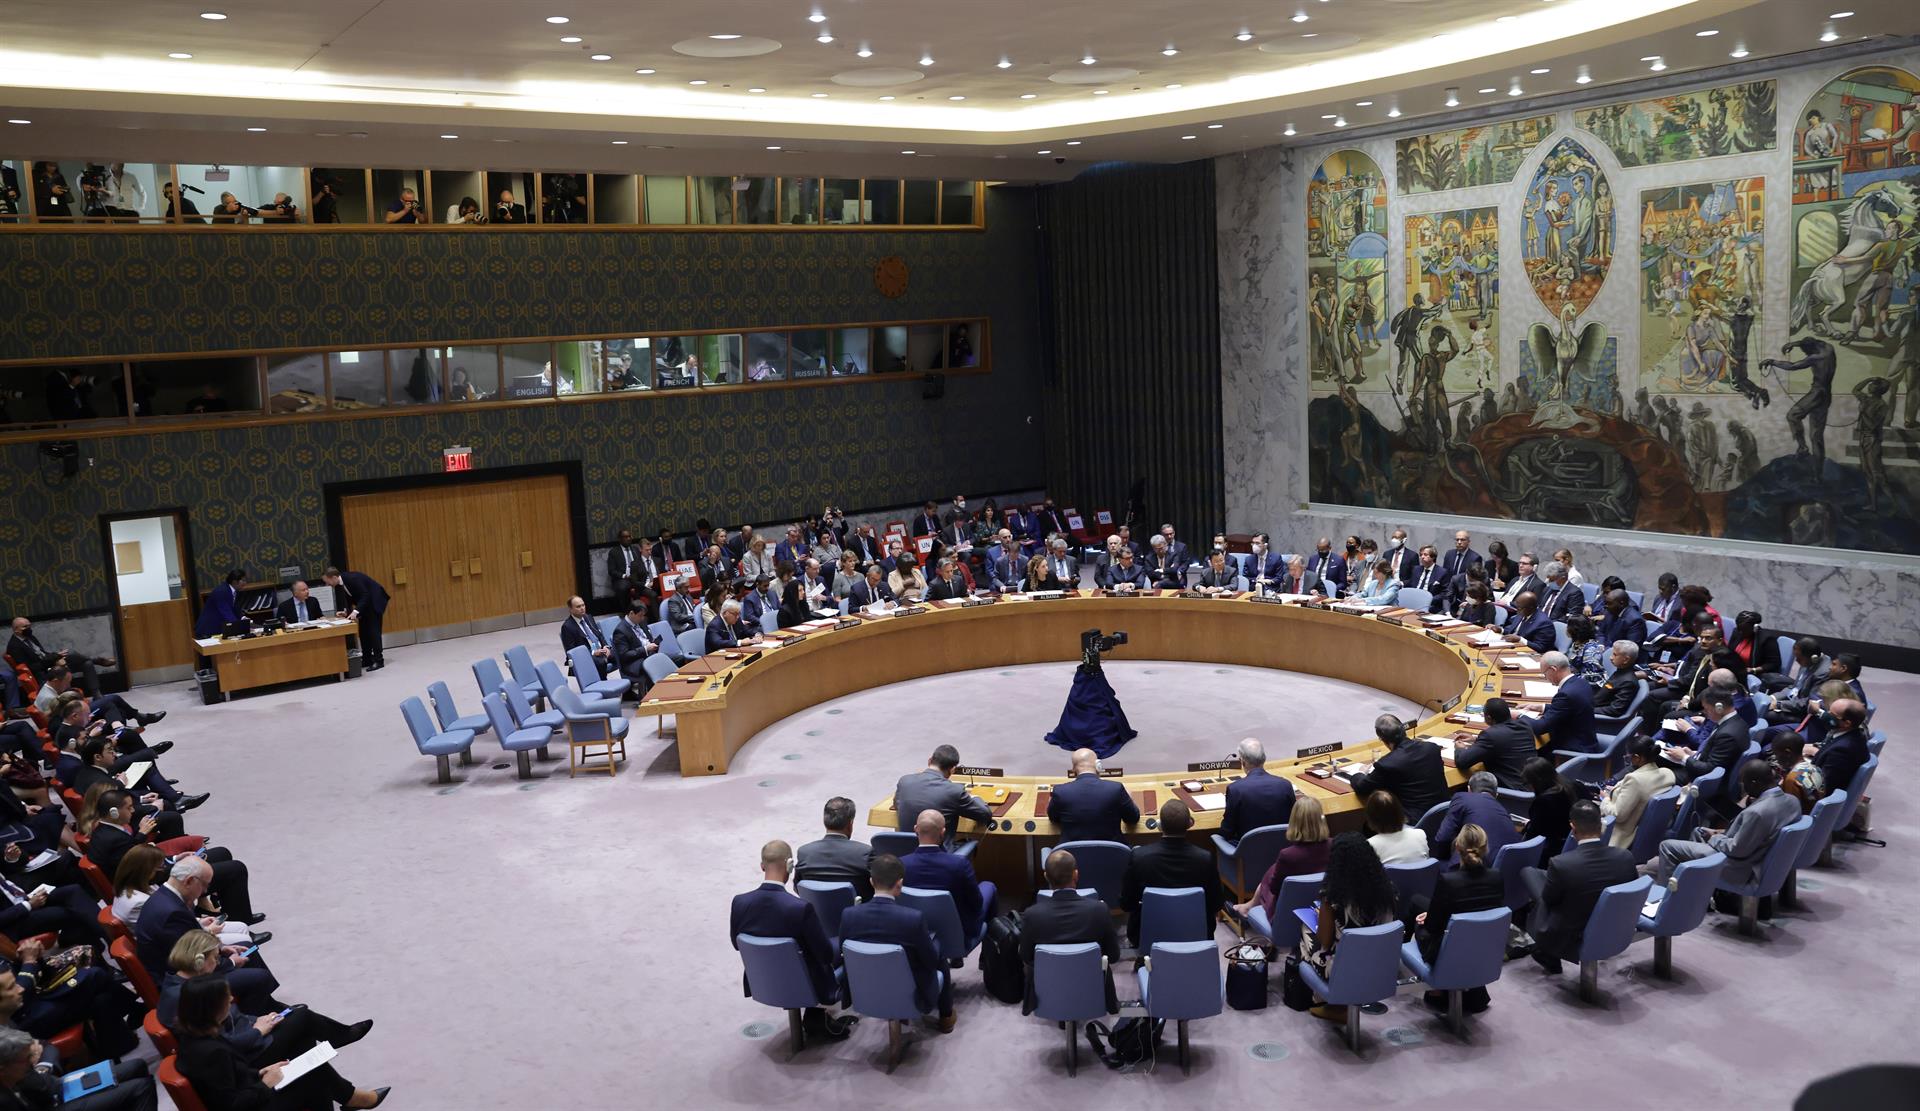 El Secretario General de las Naciones Unidas, Antonio Guterres, habla durante una reunión de alto nivel del Consejo de Seguridad de las Naciones Unidas, en una imagen de archivo. EFE/EPA/Justin Lane